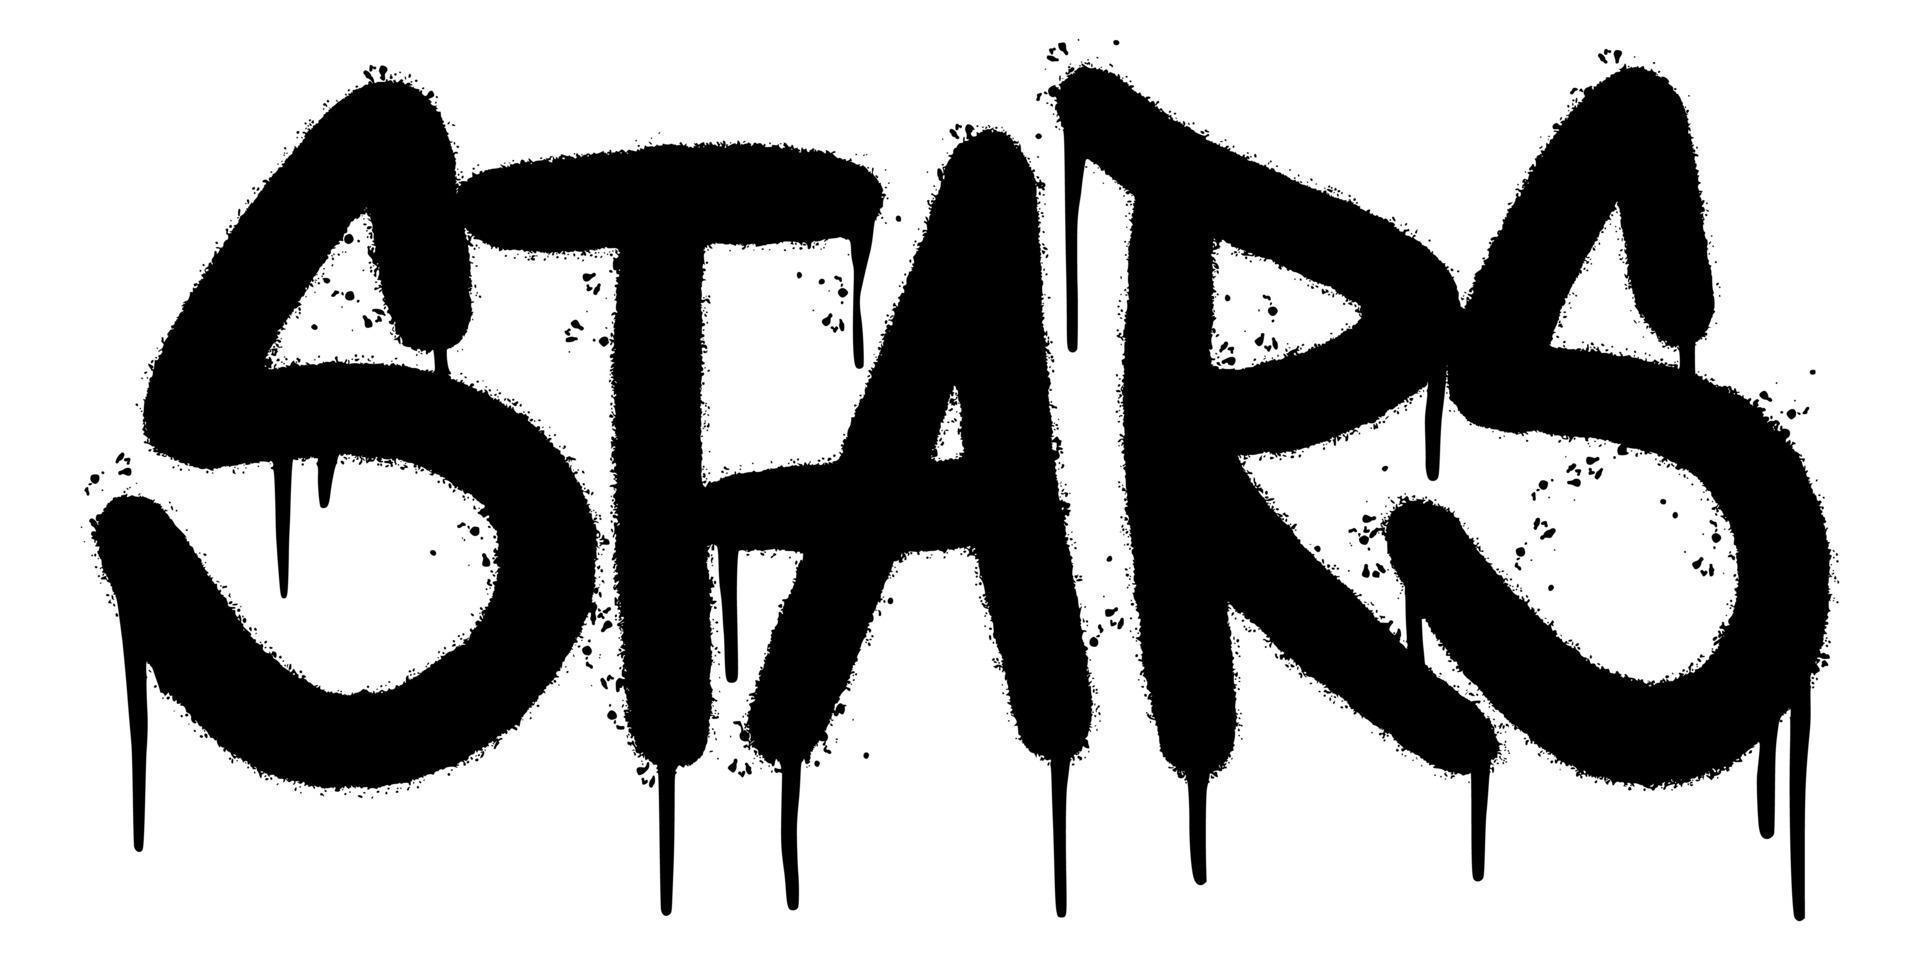 graffiti stjärnor ordet sprutas isolerad på vit bakgrund. besprutade stjärnor teckensnitt graffiti. vektor illustration.